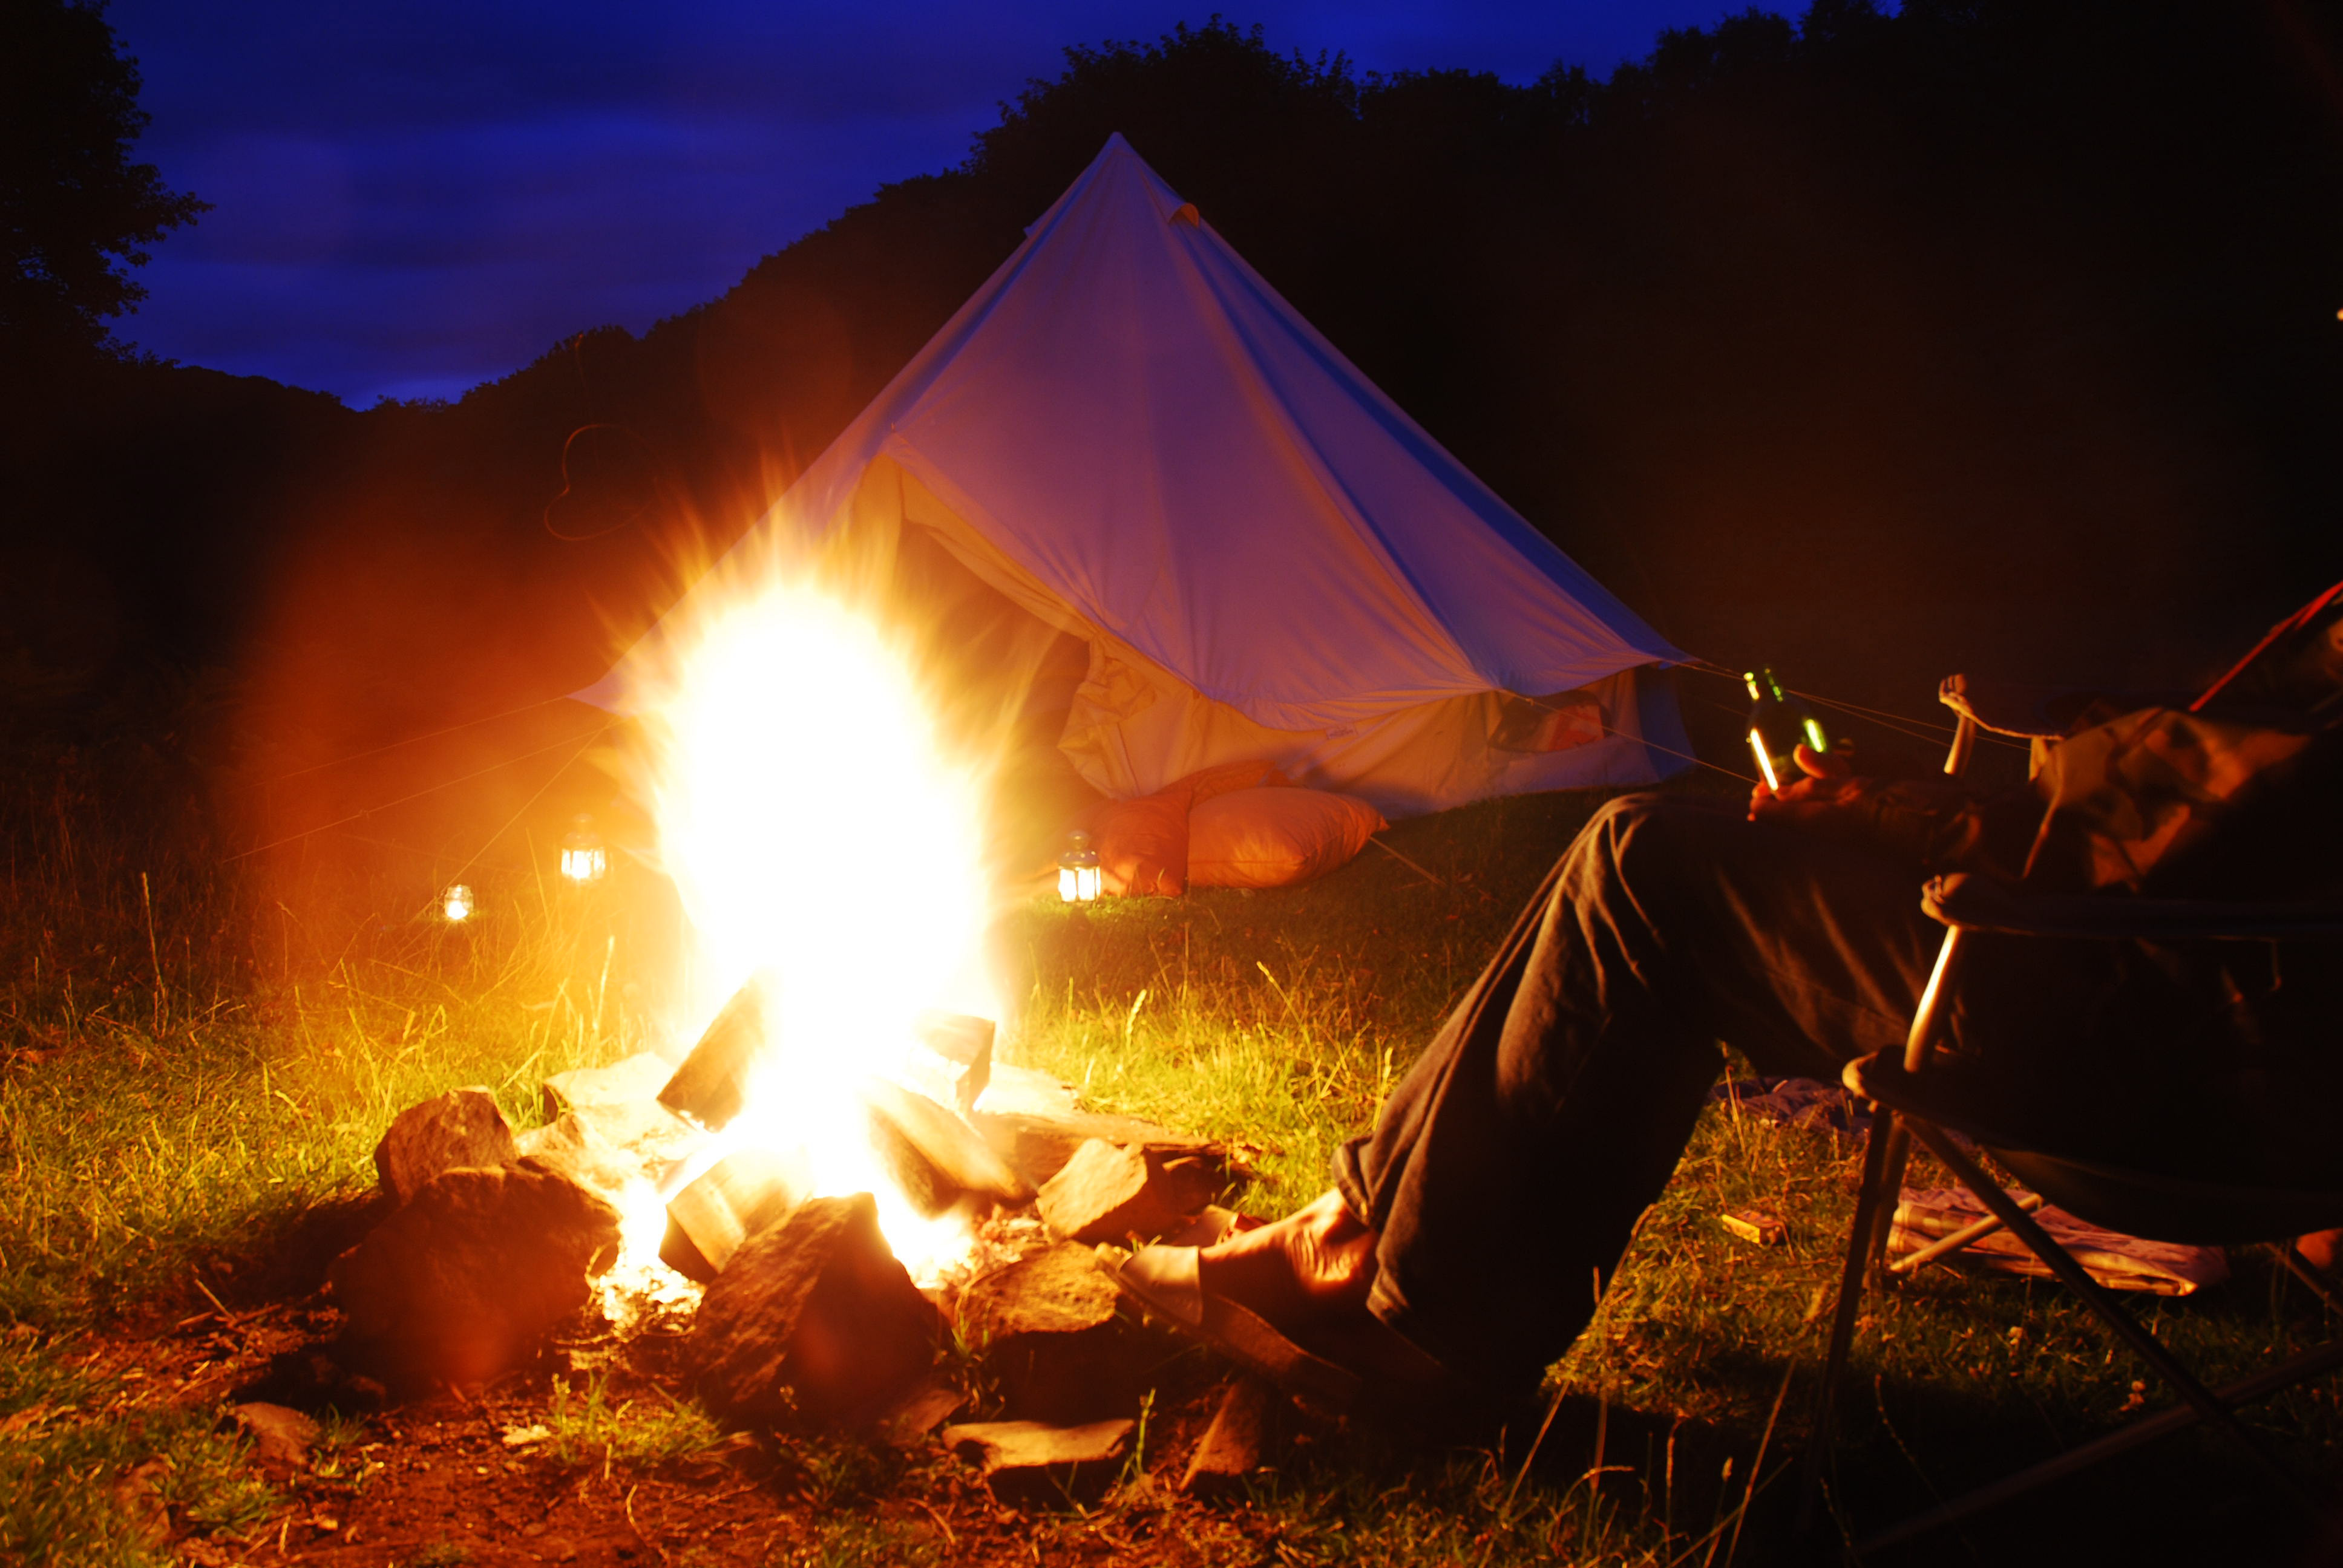 He is at camp. Палатка ночью. Camping Bonfire. Огонь лето. Палатка в лесу с огнем.